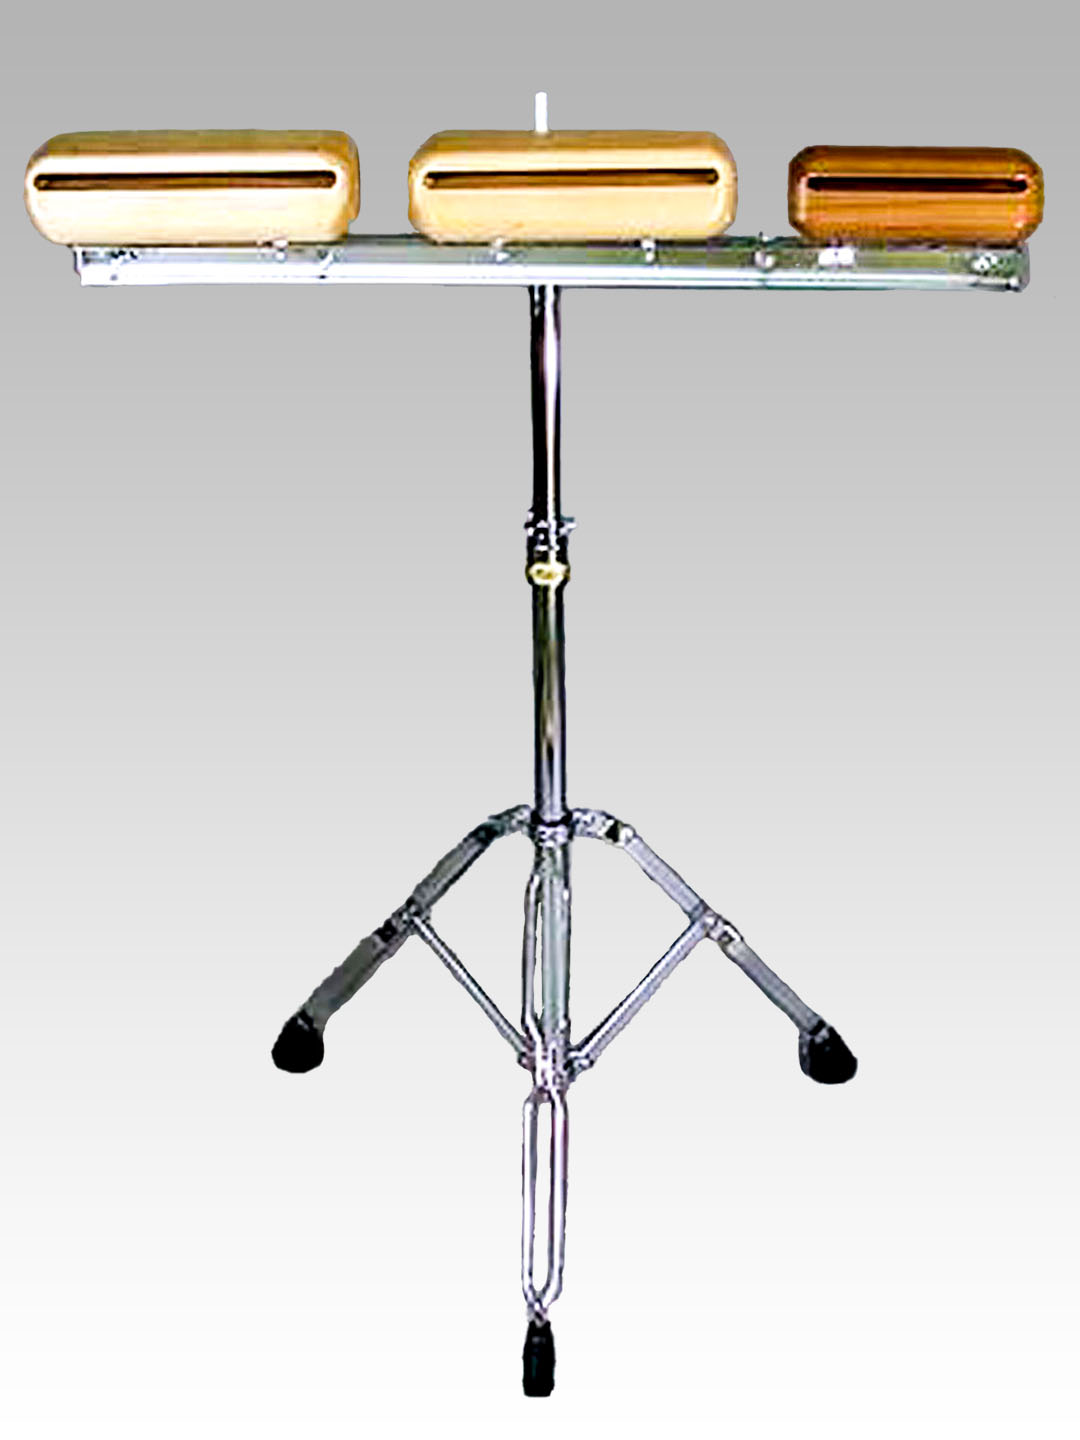 ハンドウッドブロック マレット付き リトミック 打楽器 知育 ウッドブロック